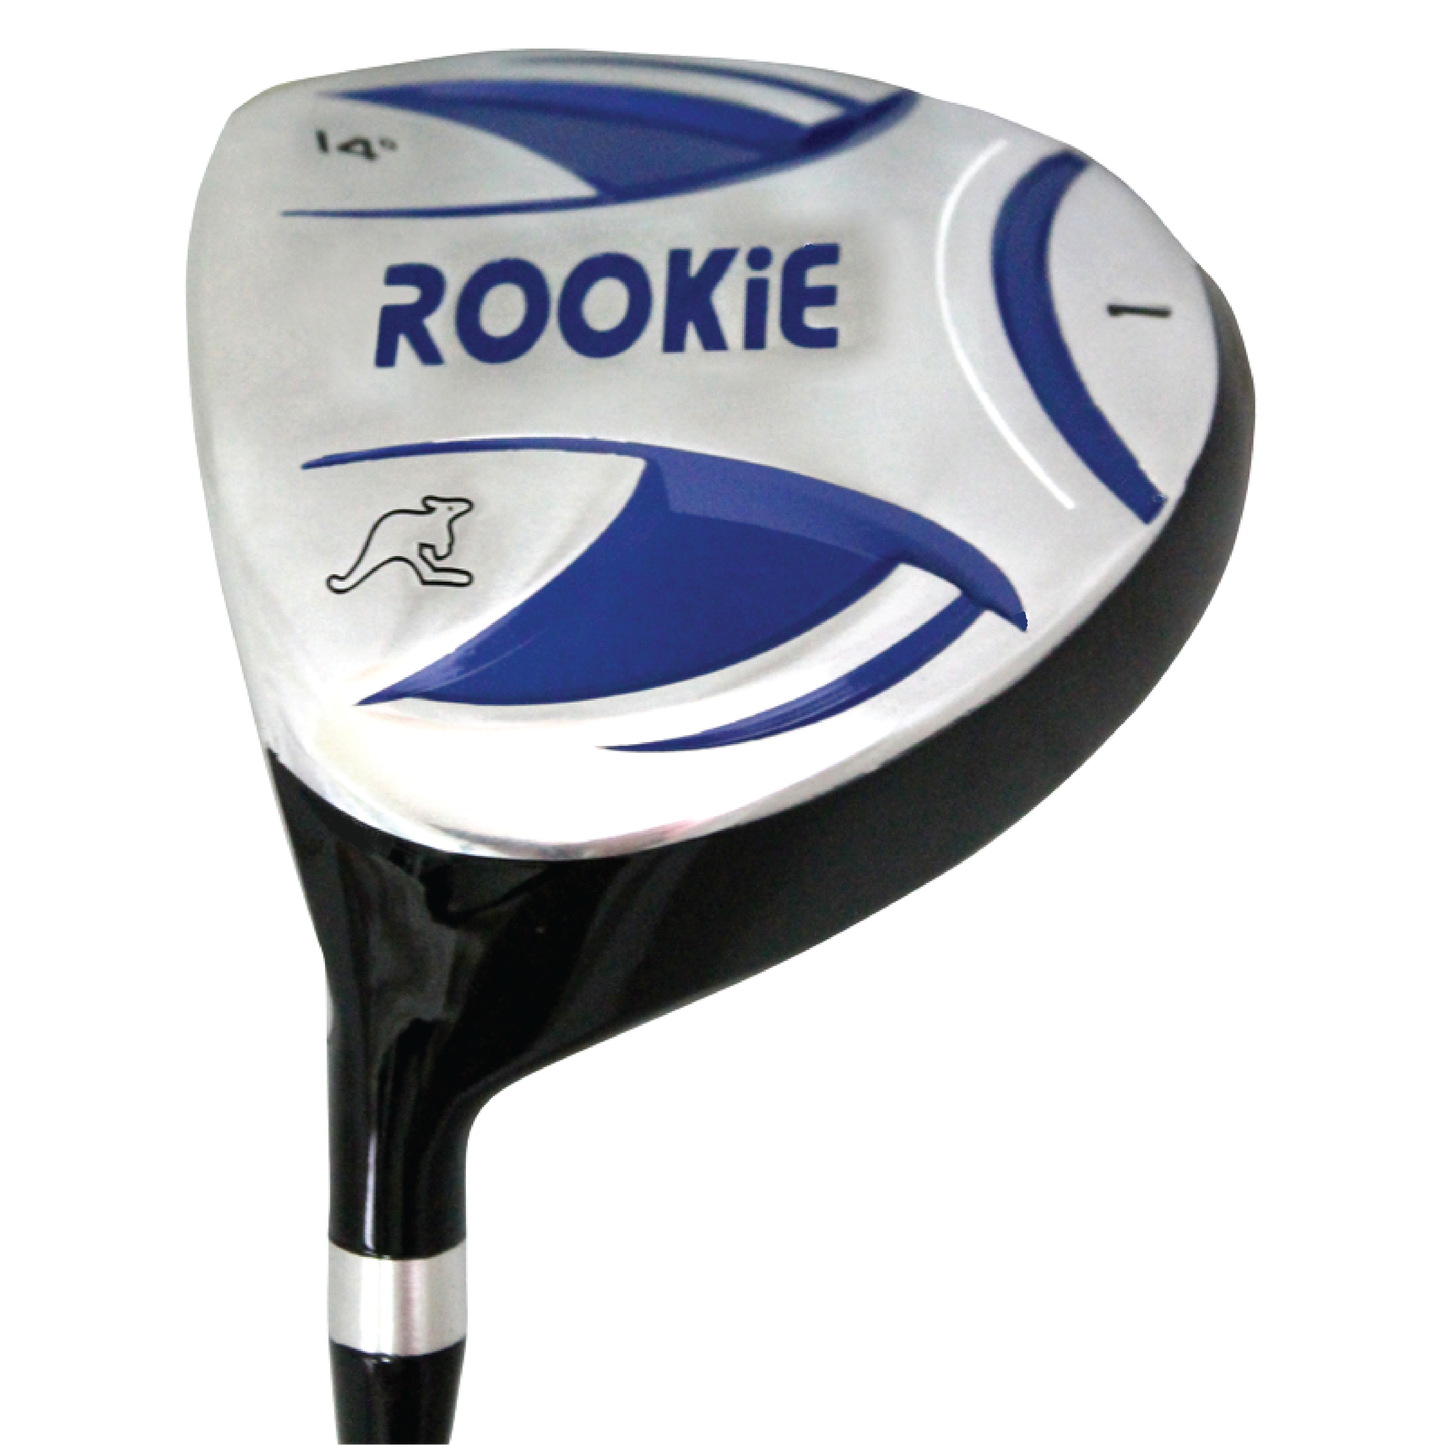 Rookie - Kids Golf Set LH - 6 Piece Blue 4 to 7 YRS